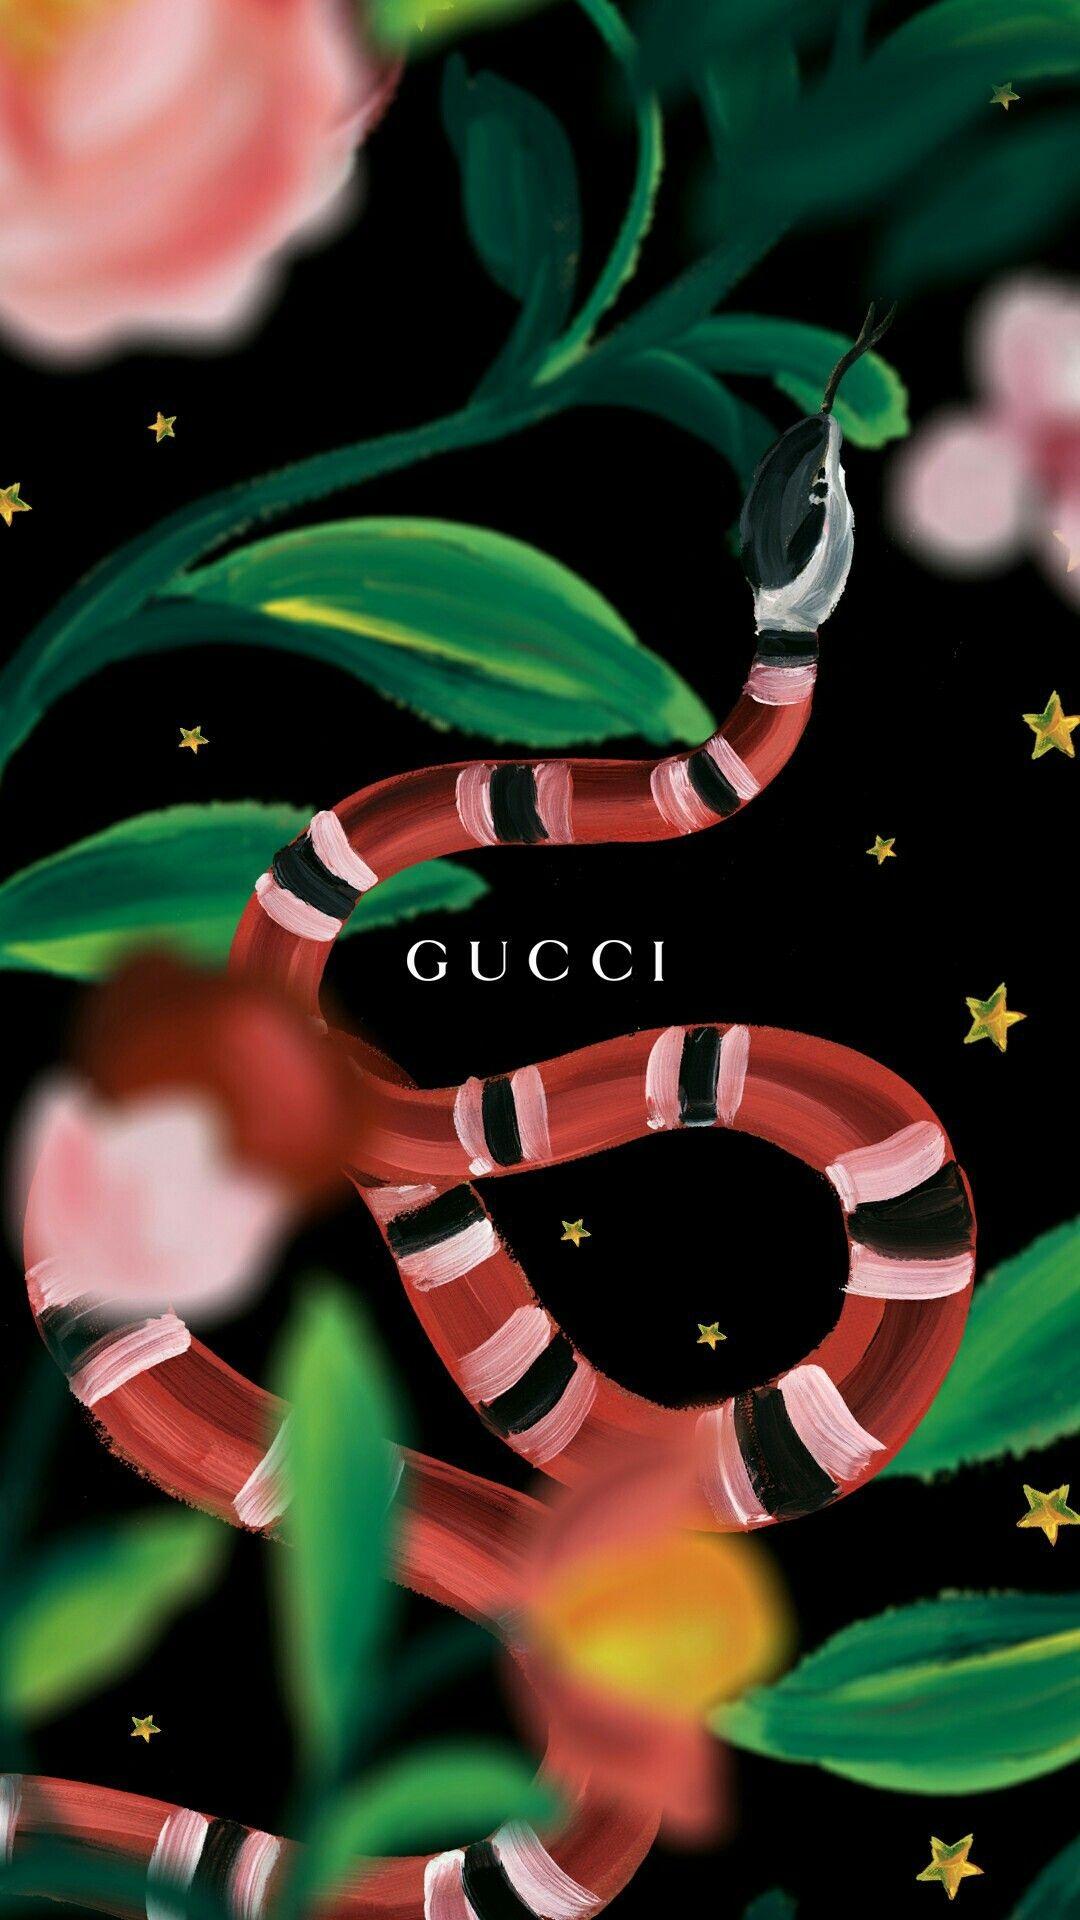 Logo Gucci Supreme Louis Vuitton - supreme gucci louis vuitton HD phone  wallpaper